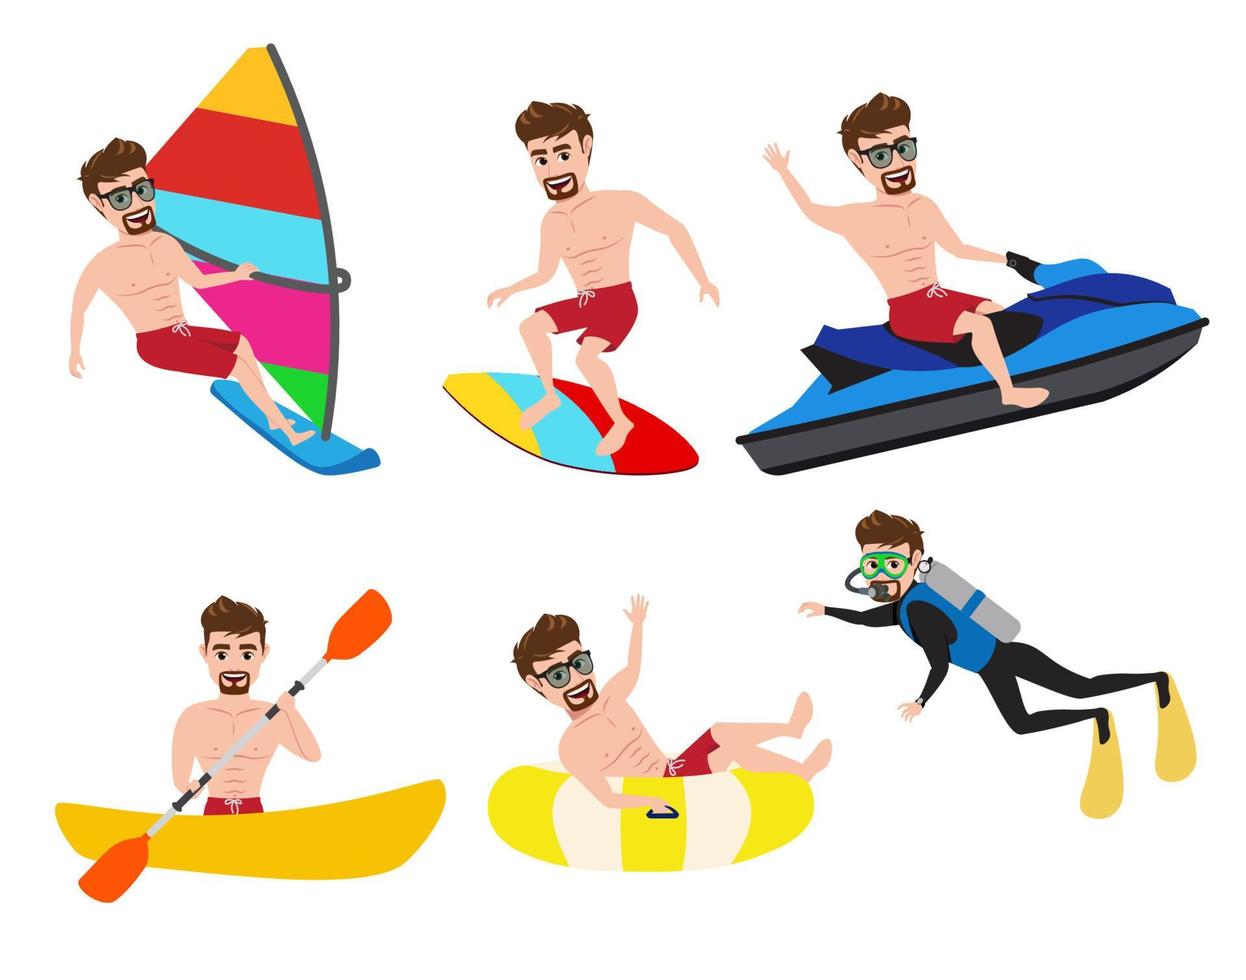 conjunto de vectores de caracteres de hombre de actividad de verano. personaje masculino en actividades de deportes acuáticos de verano como surf, jet ski, kayak, canotaje, buceo y piragüismo aislado en fondo blanco.